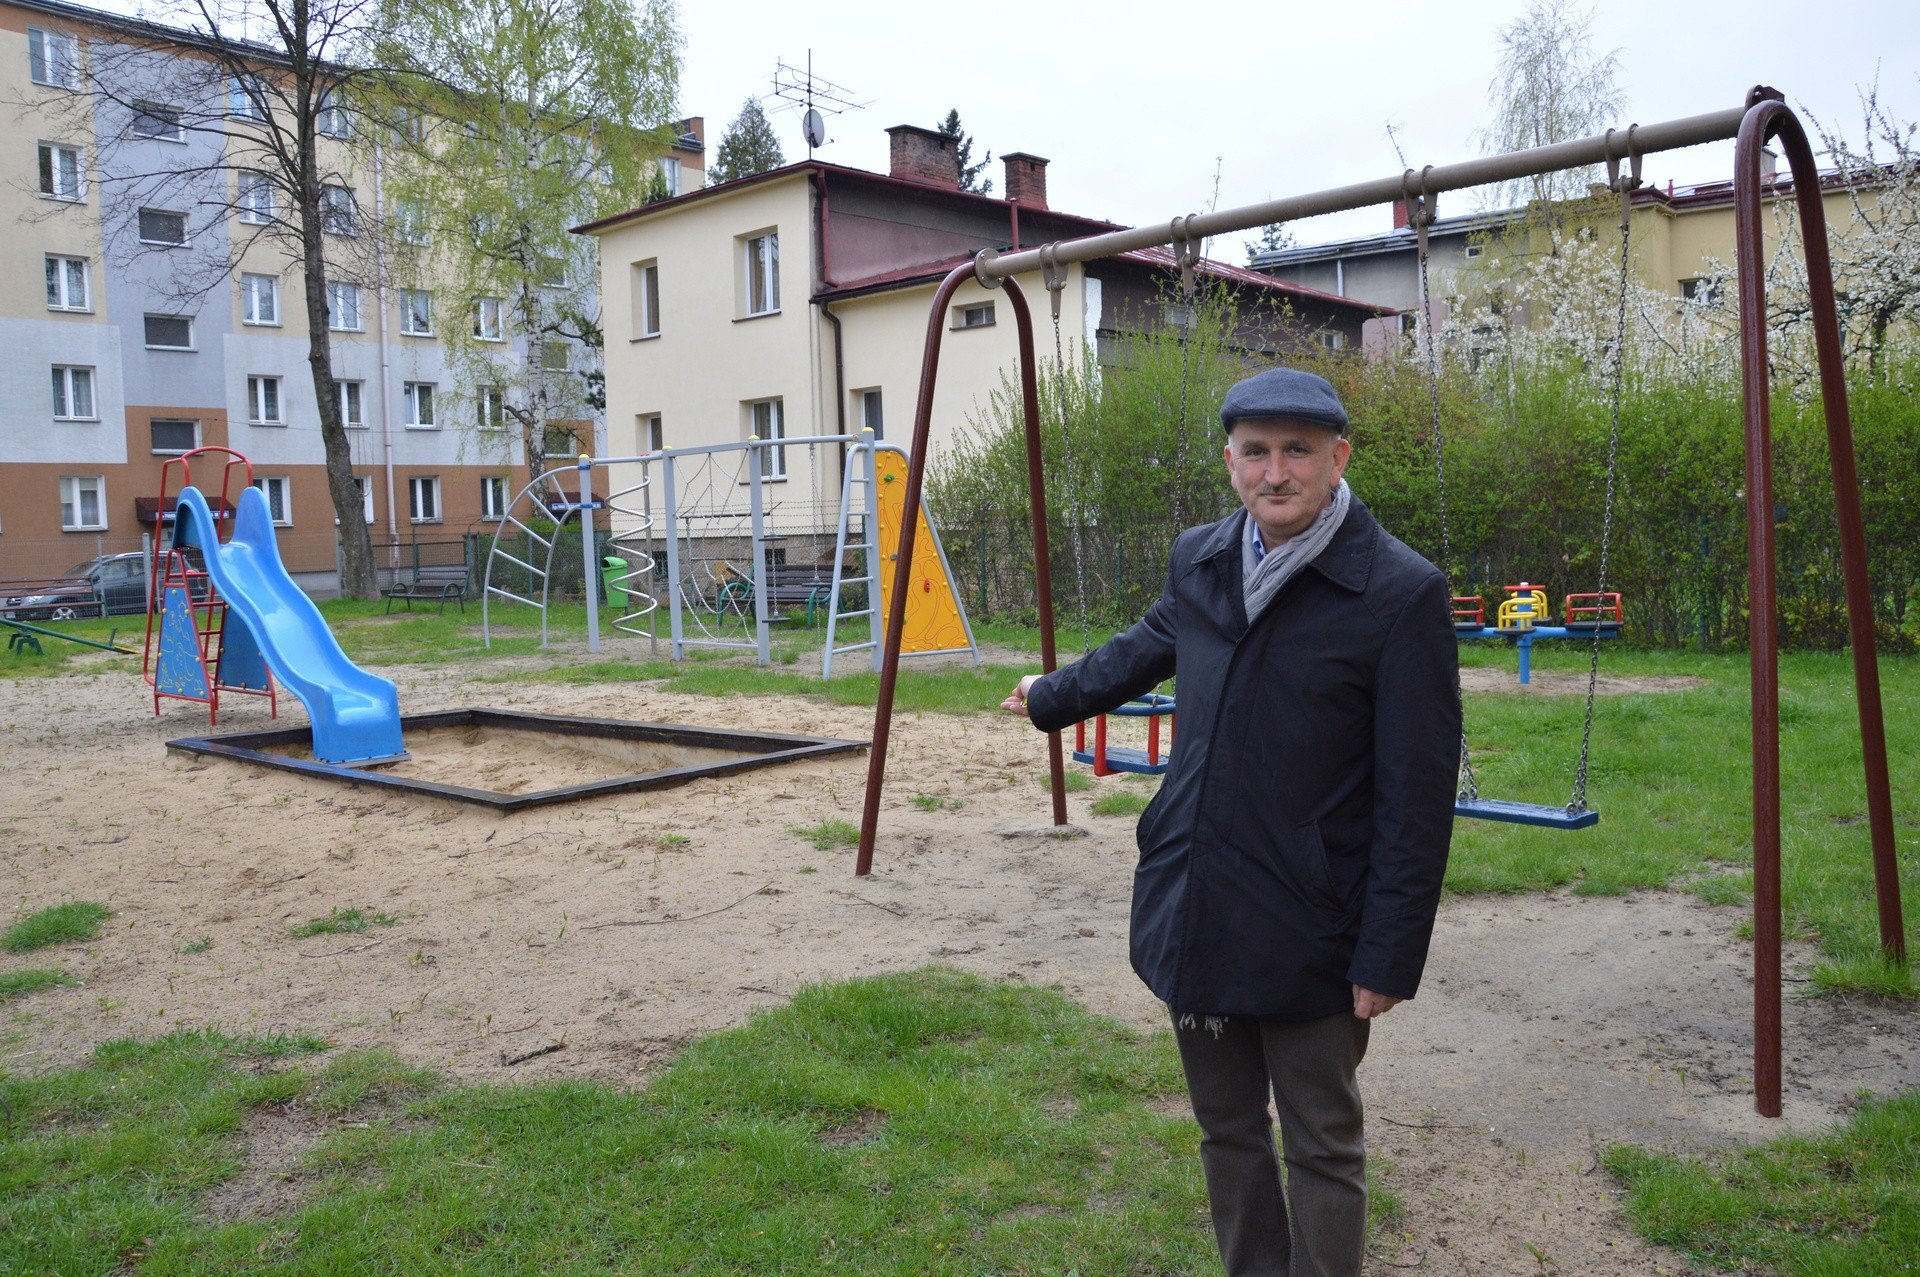 Brakuje placów zabaw na sądeckich osiedlach | Gazeta Krakowska